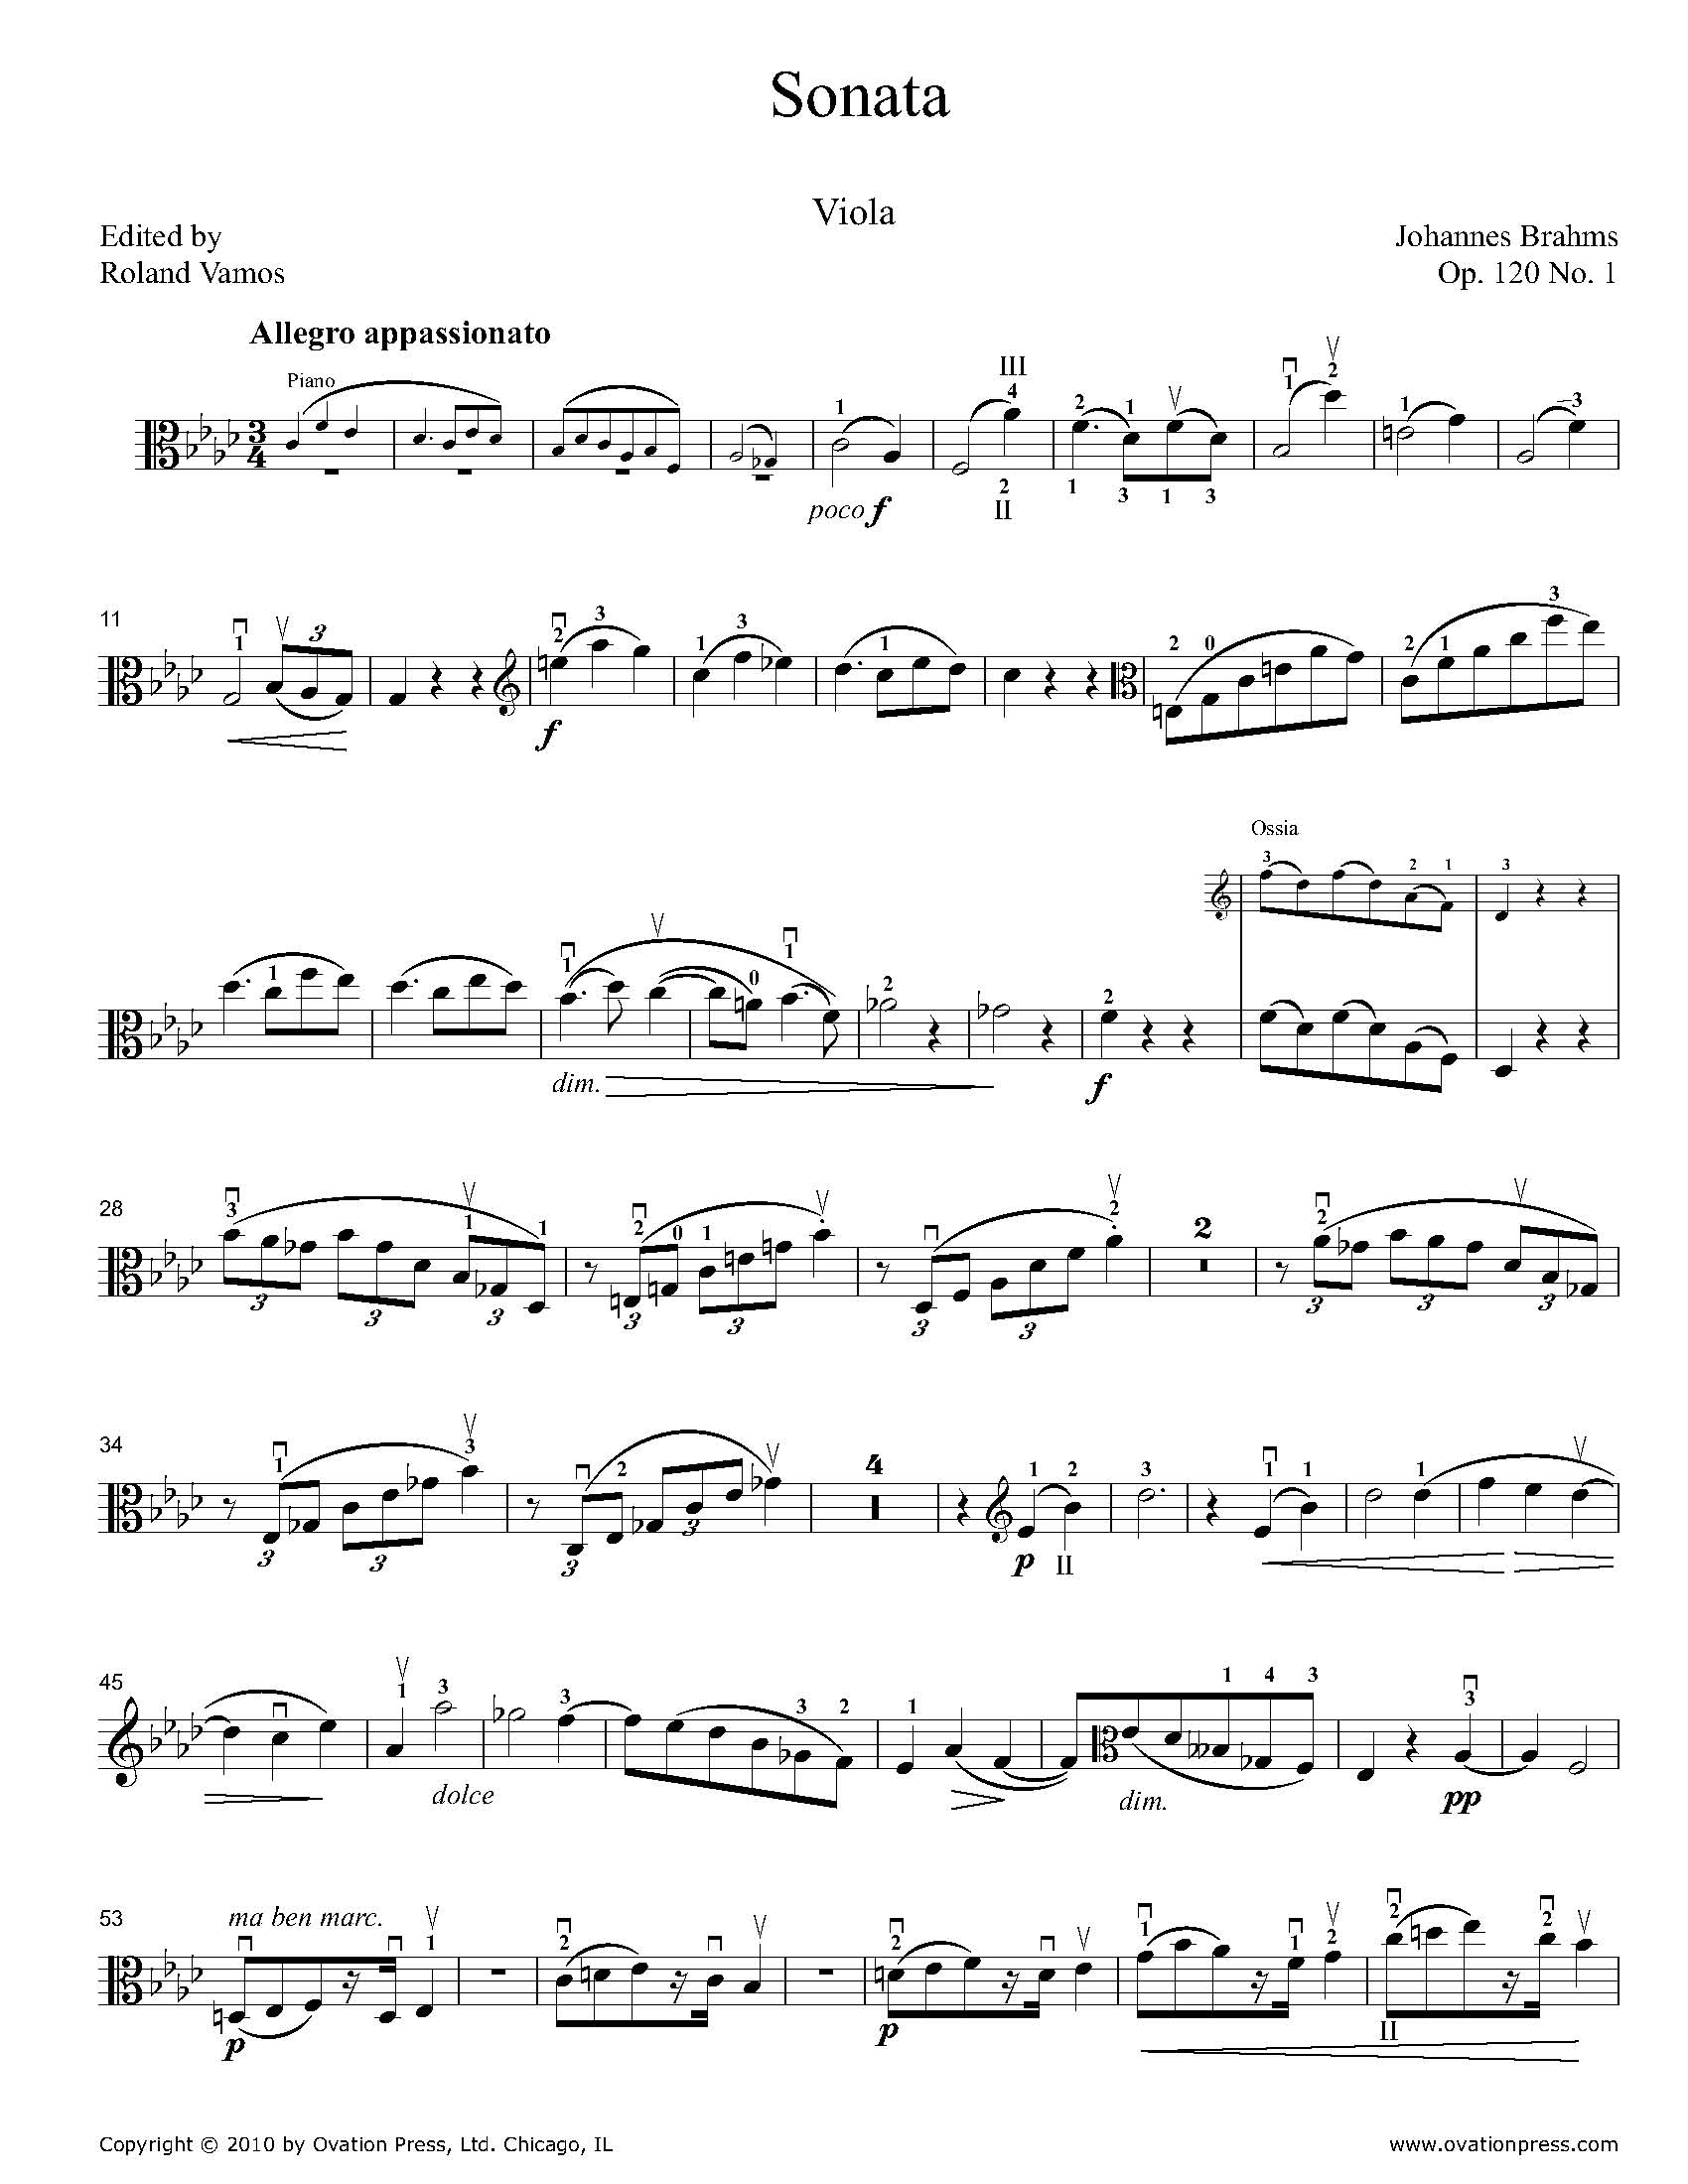 Sonata Op. 120 No. 1